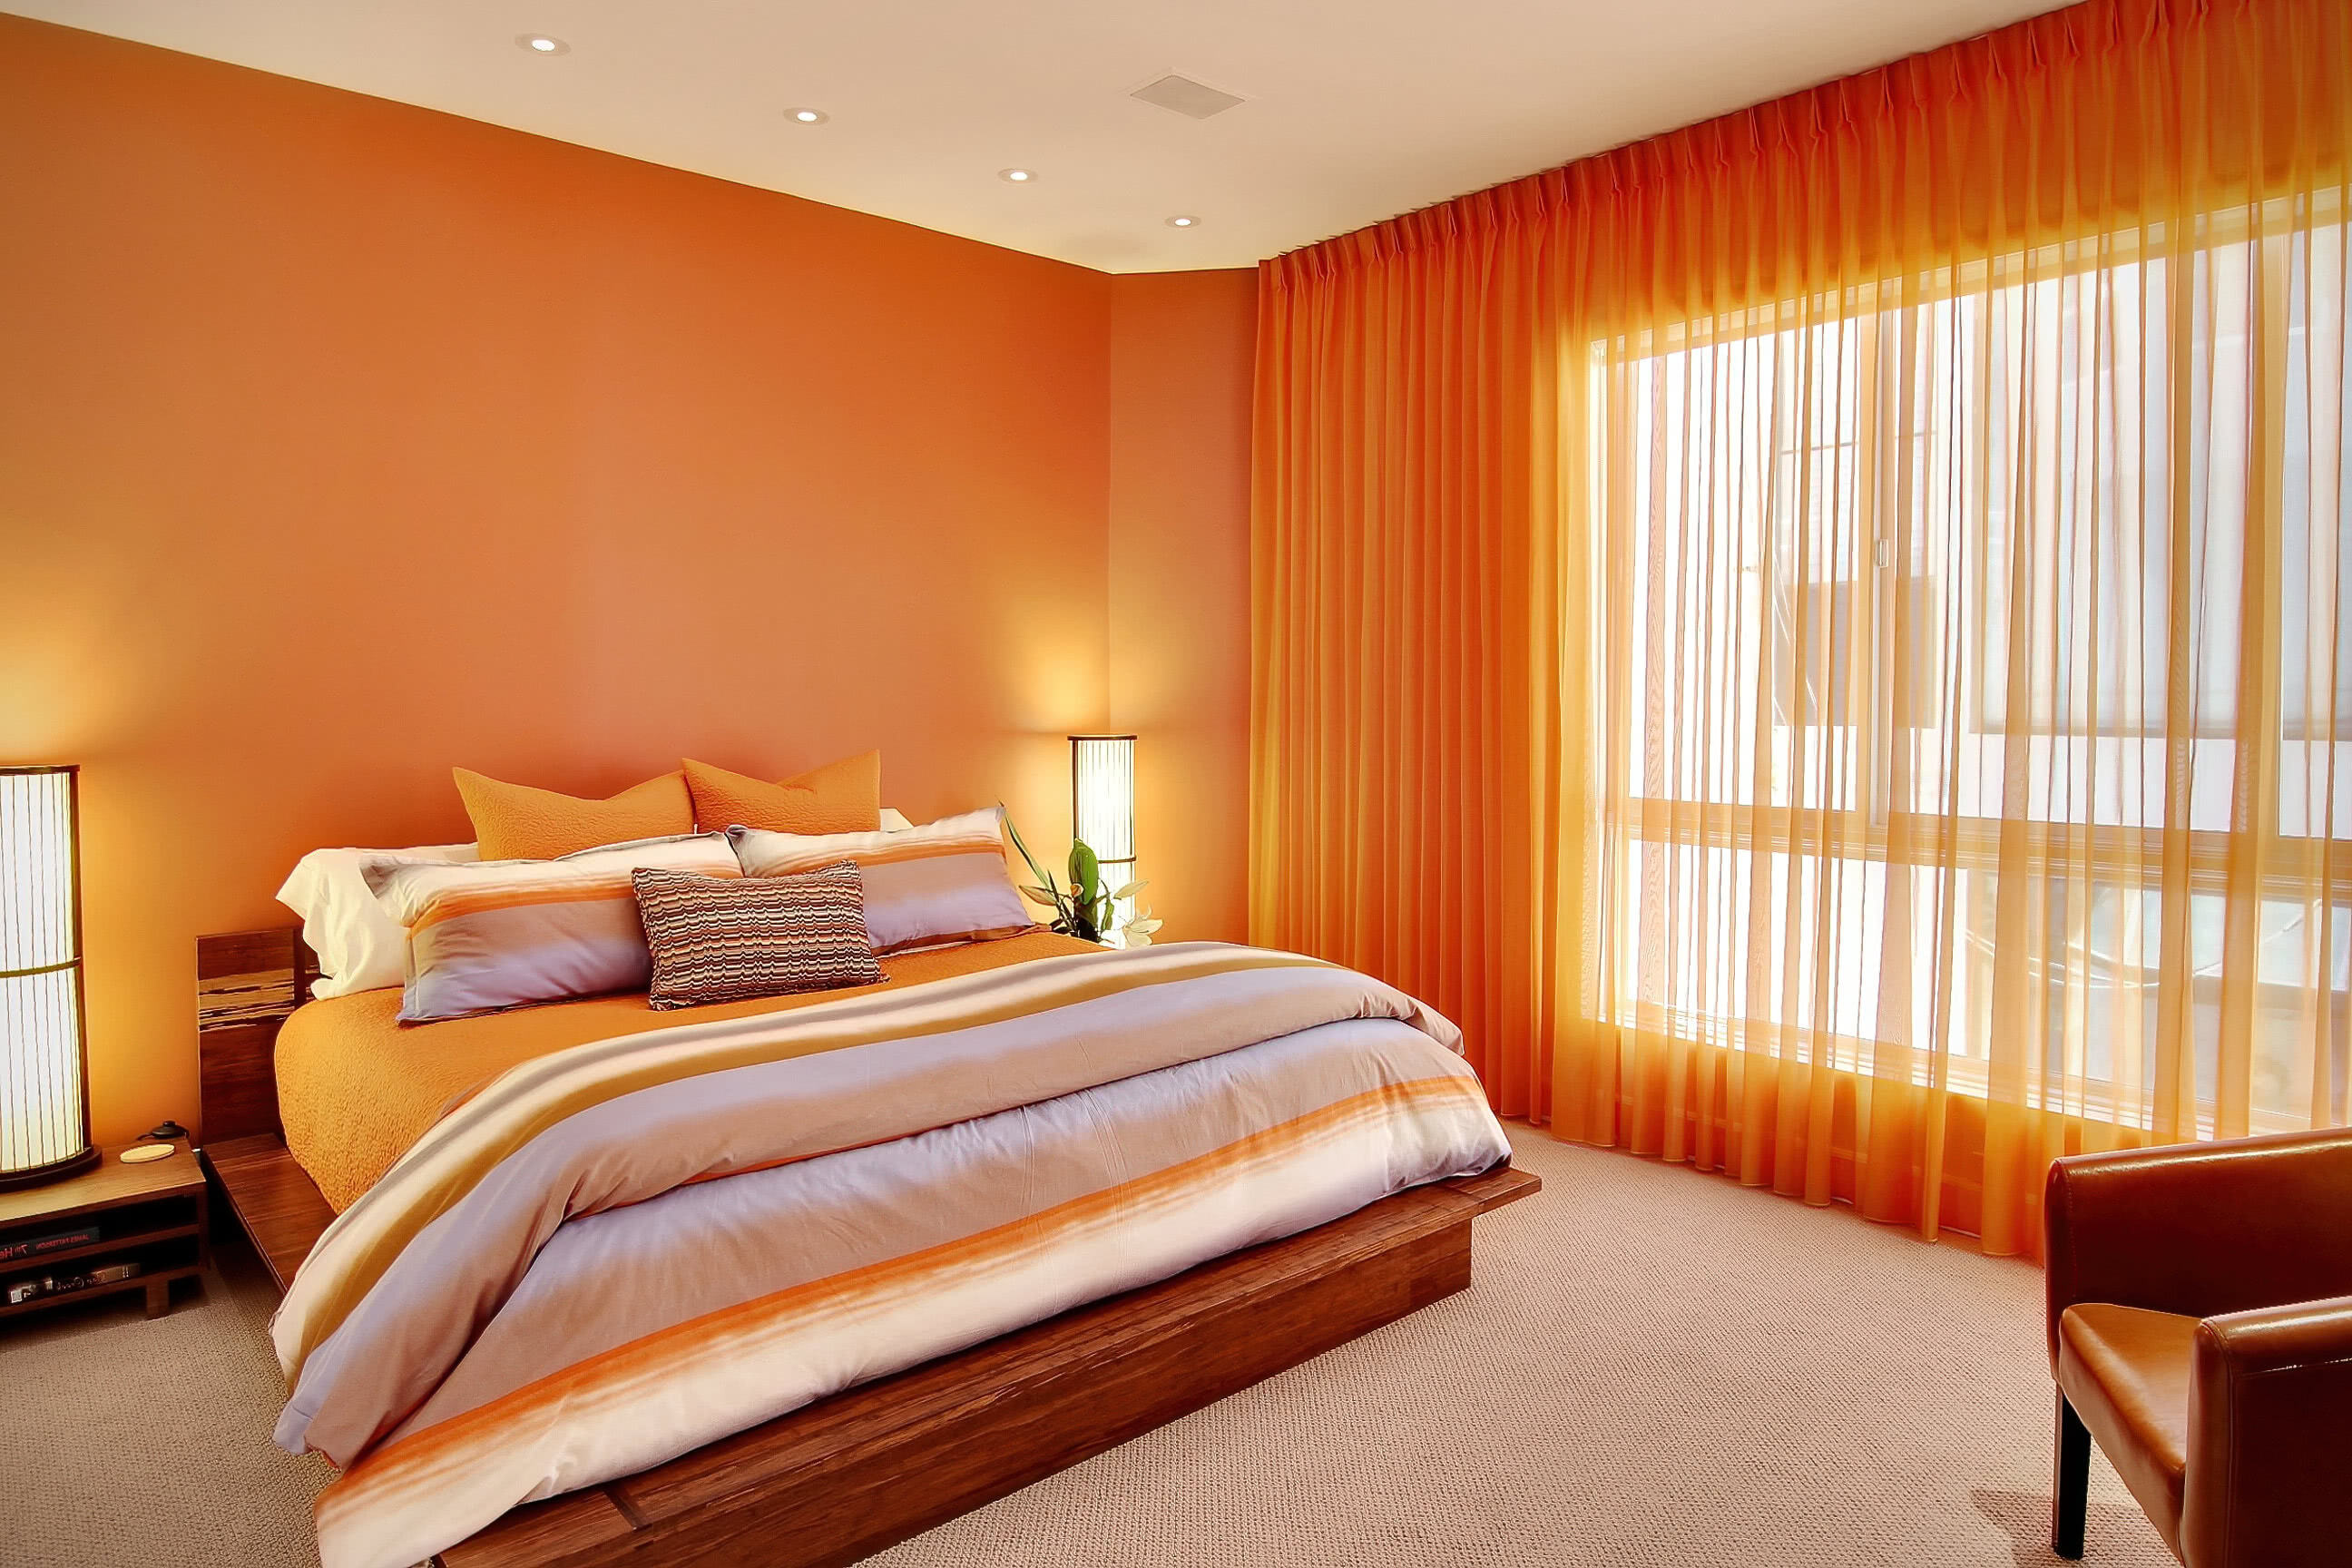 Спальня. Оранжевые стены, шторы, покрывало, кресло, кровать